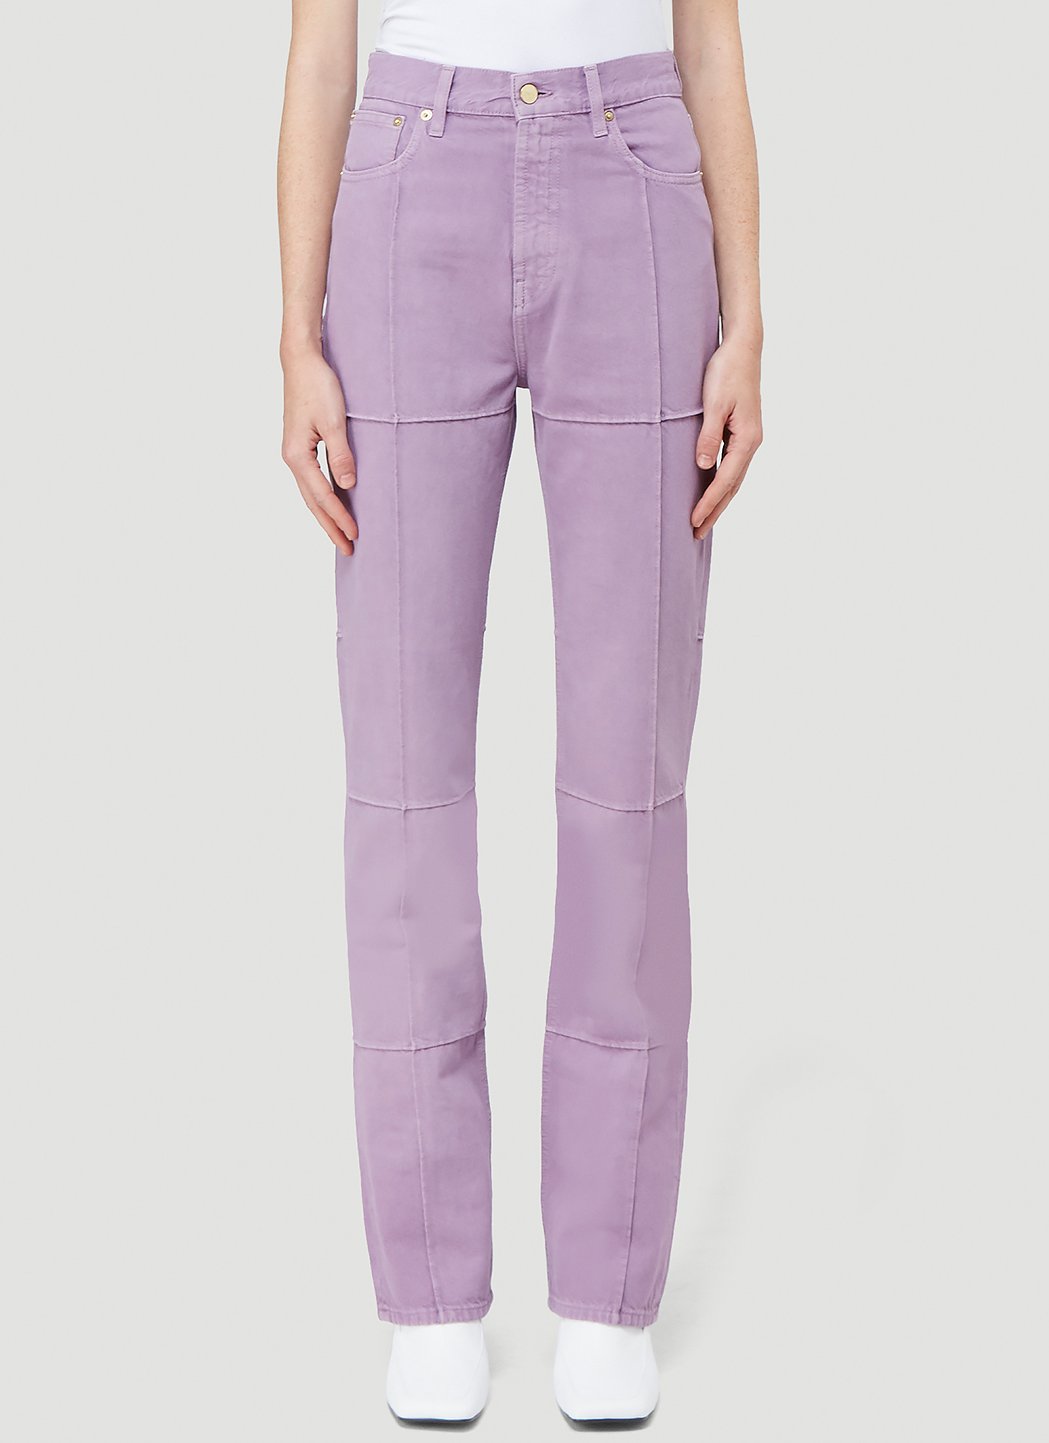 Jacquemus Le De Nimes Carro Jeans in Purple | LN-CC